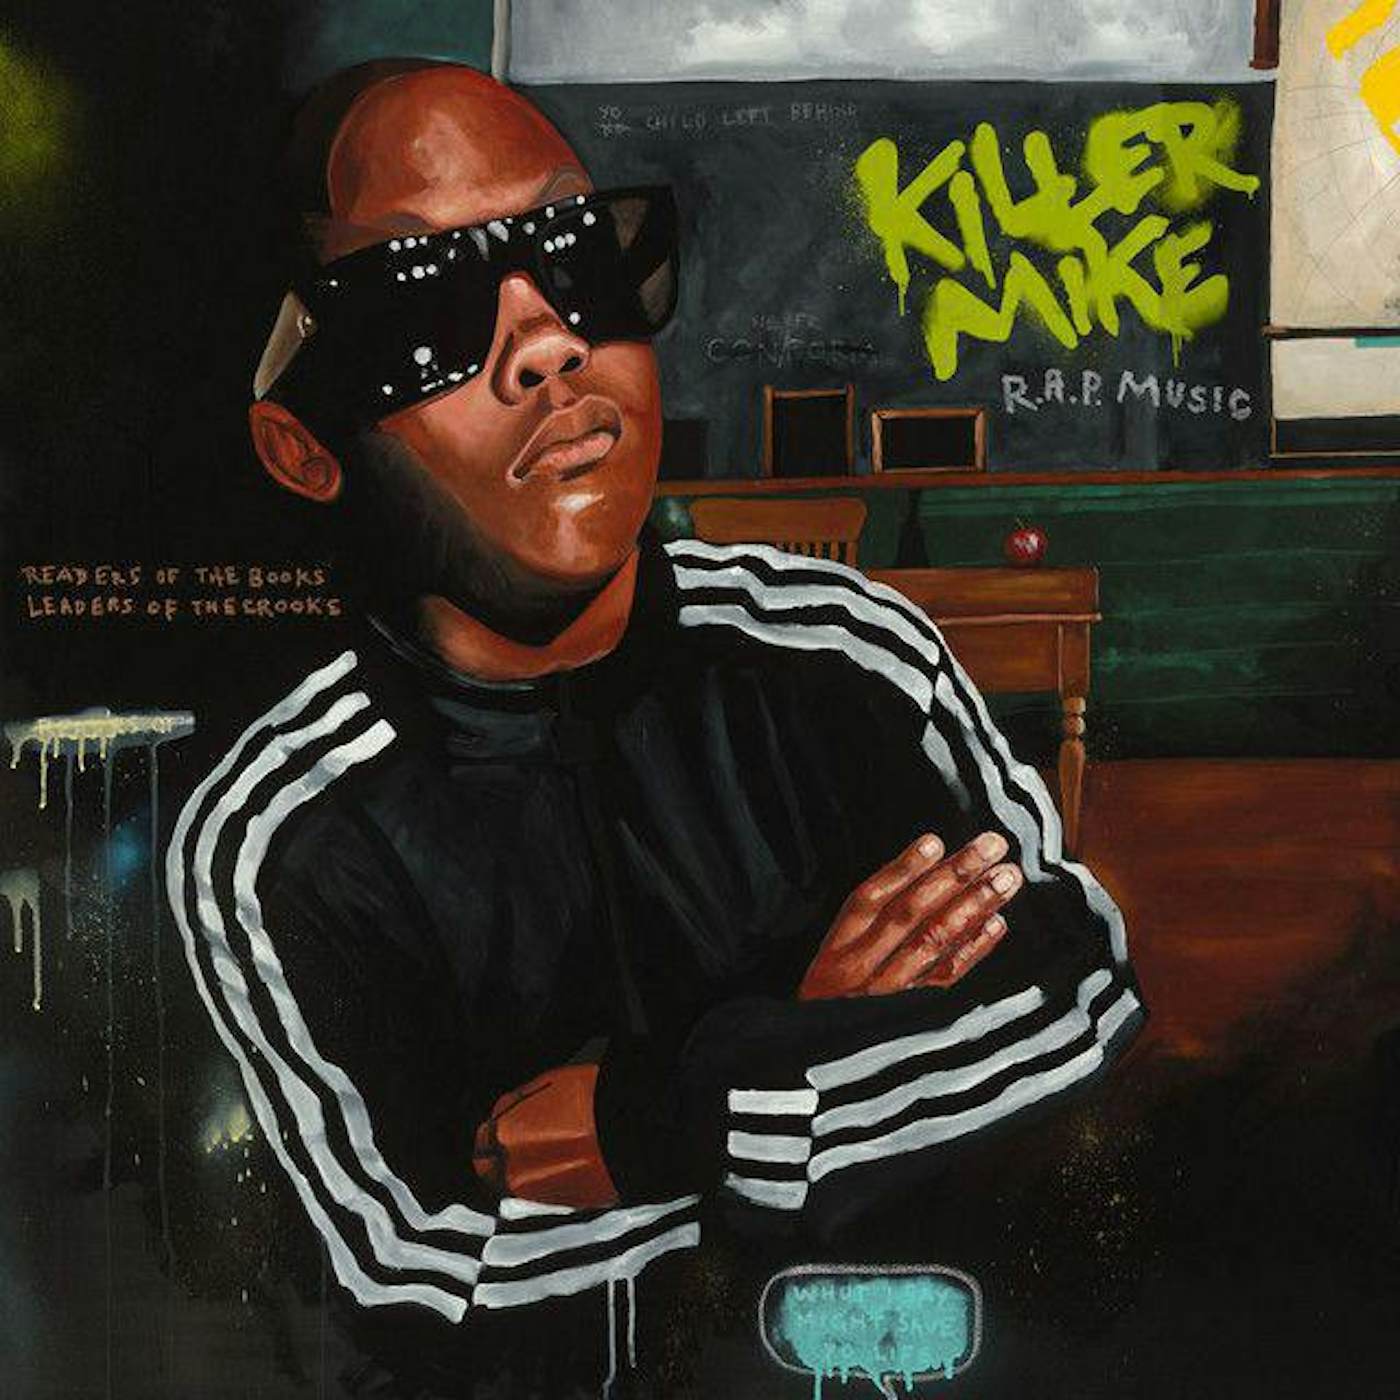 Killer Mike ‘R.A.P. Music’ (2LP) Green Vinyl